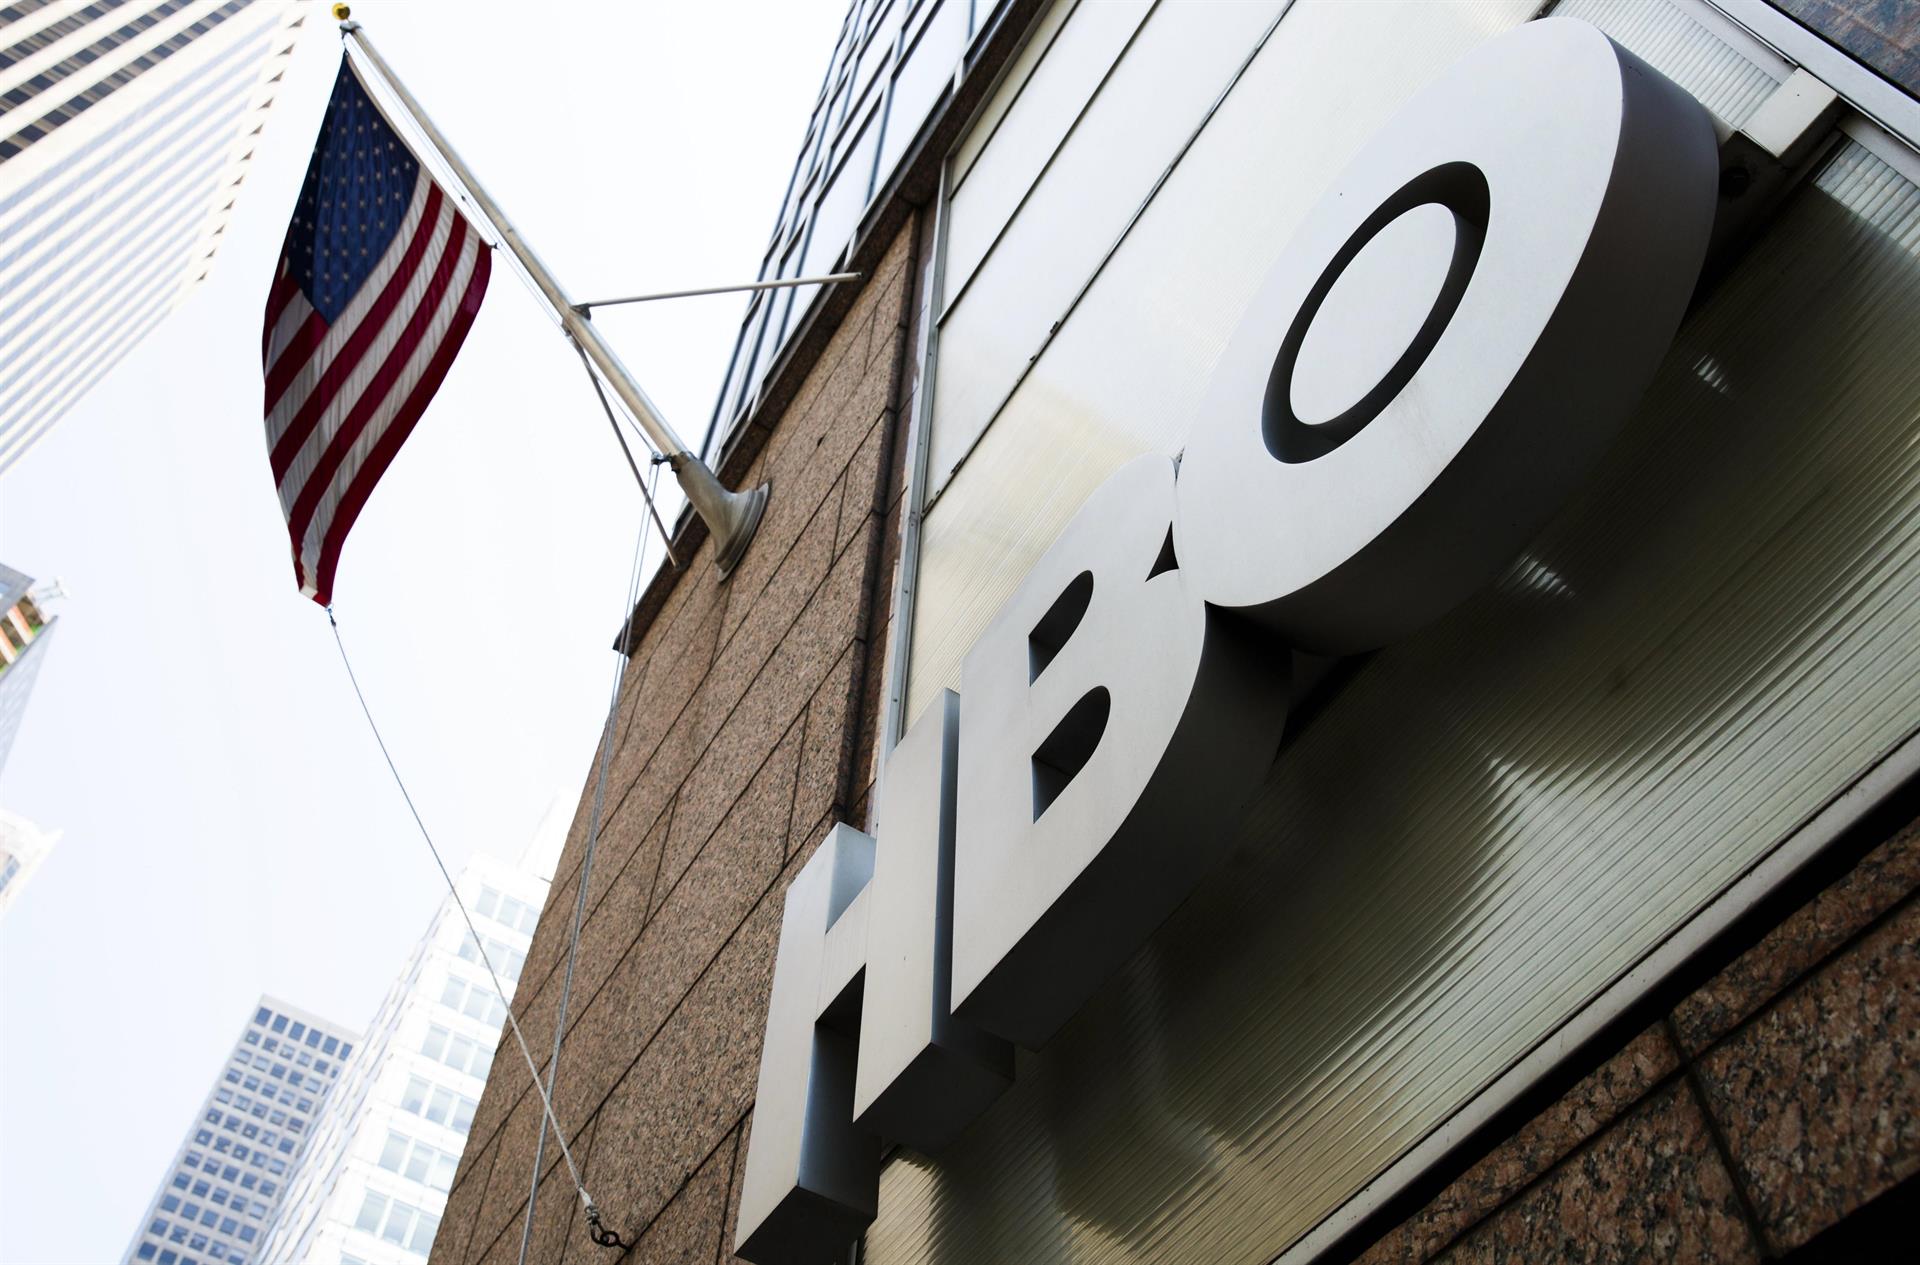 Vista de las oficinas de HBO en Nueva York, Estados Unidos. Imagen de archivo. EFE/Justin Lane
